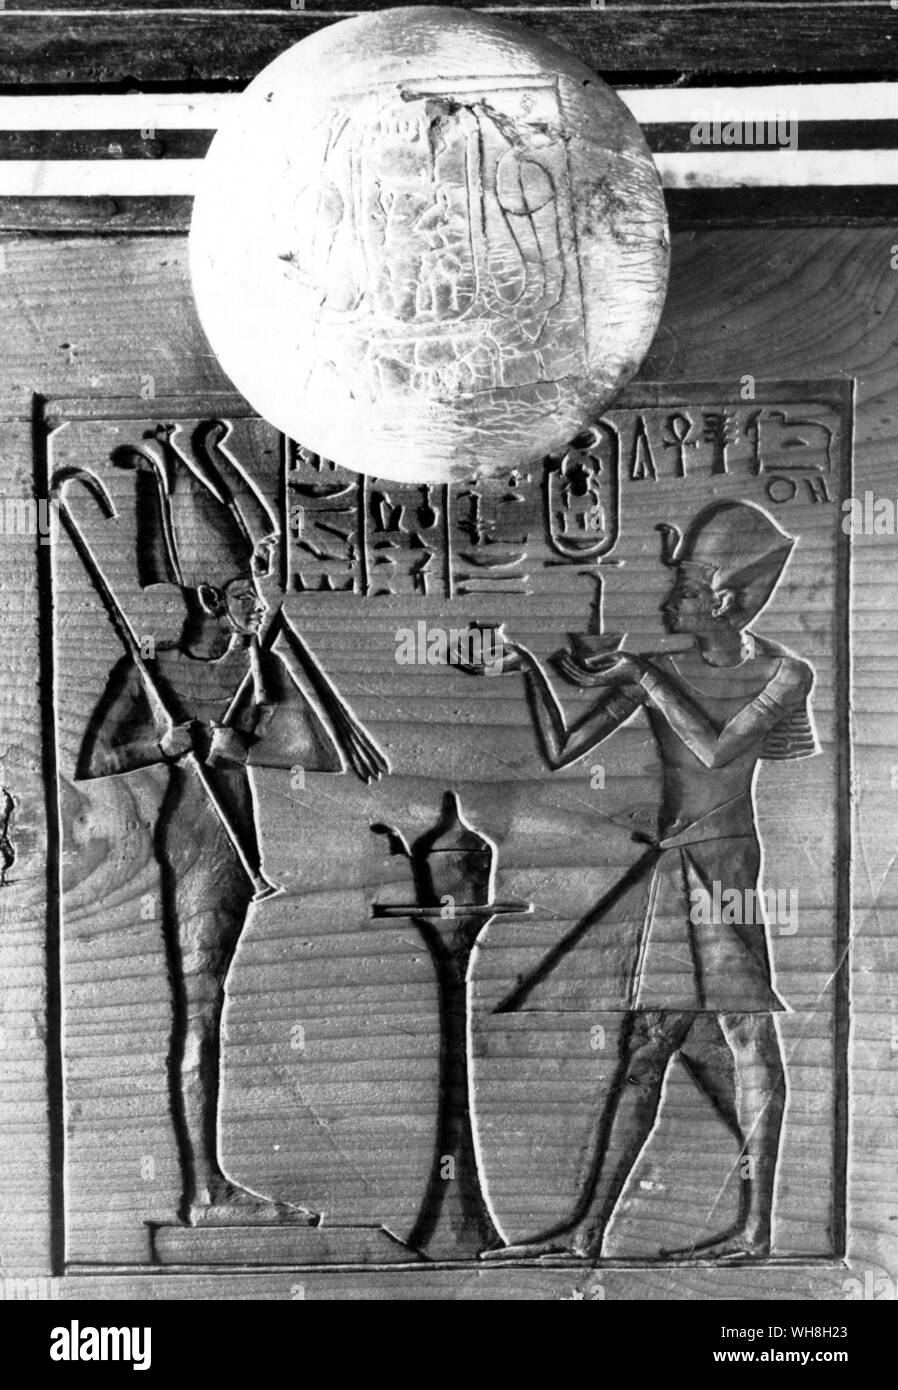 Il insrciptions intorno alla maniglia del torace portatile. I tesori di Tutankhamon, il catalogo della mostra da MI E S Edwards, pagina 91. Foto Stock